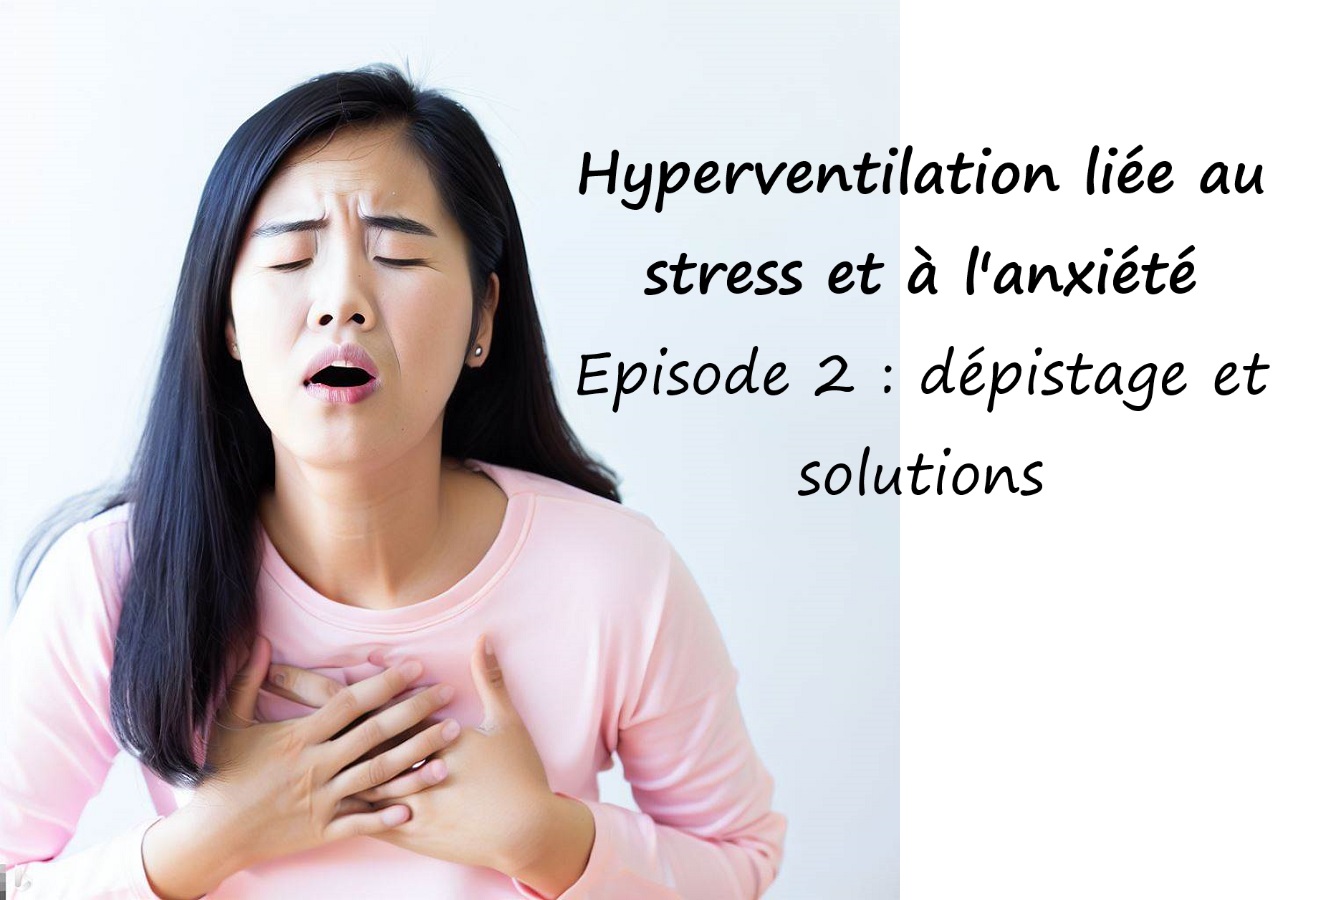 You are currently viewing Hyperventilation liée au stress et à l’anxiété. Episode 2 : dépistage et solutions